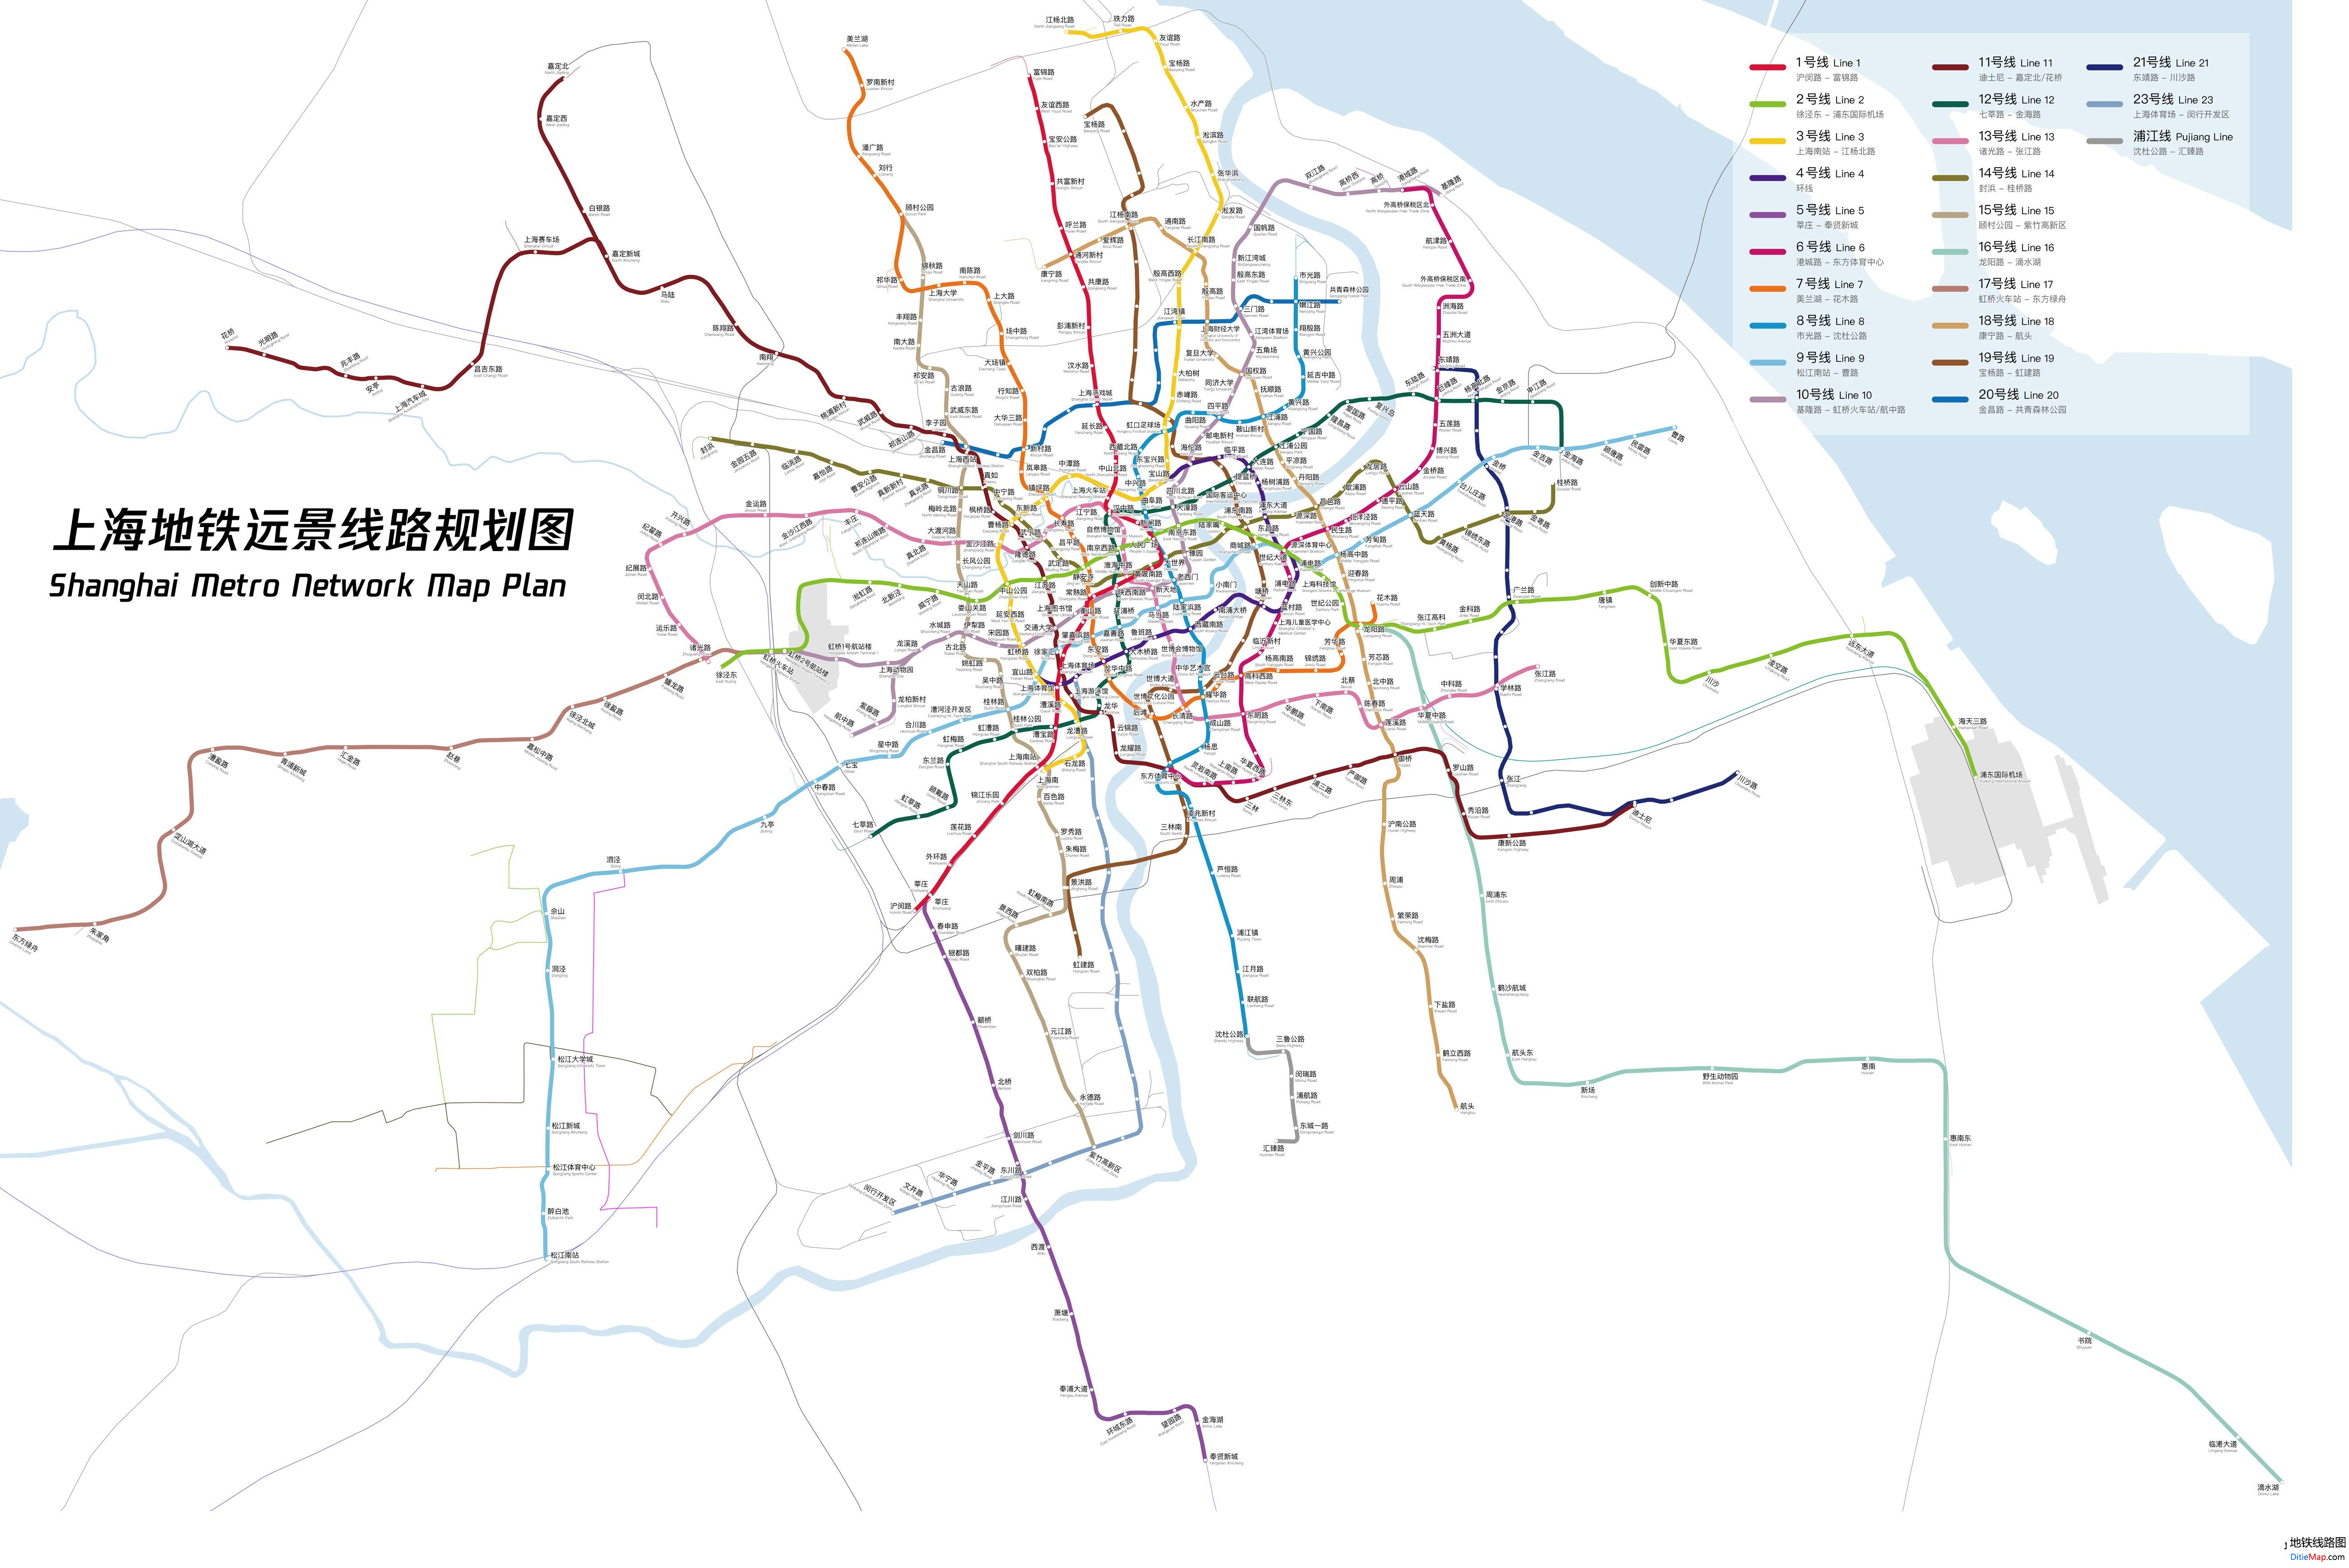 上海地铁线路图 运营时间票价站点 查询下载 上海地铁线路图 上海地铁票价 上海地铁运营时间 上海地铁 上海地铁线路图  第3张